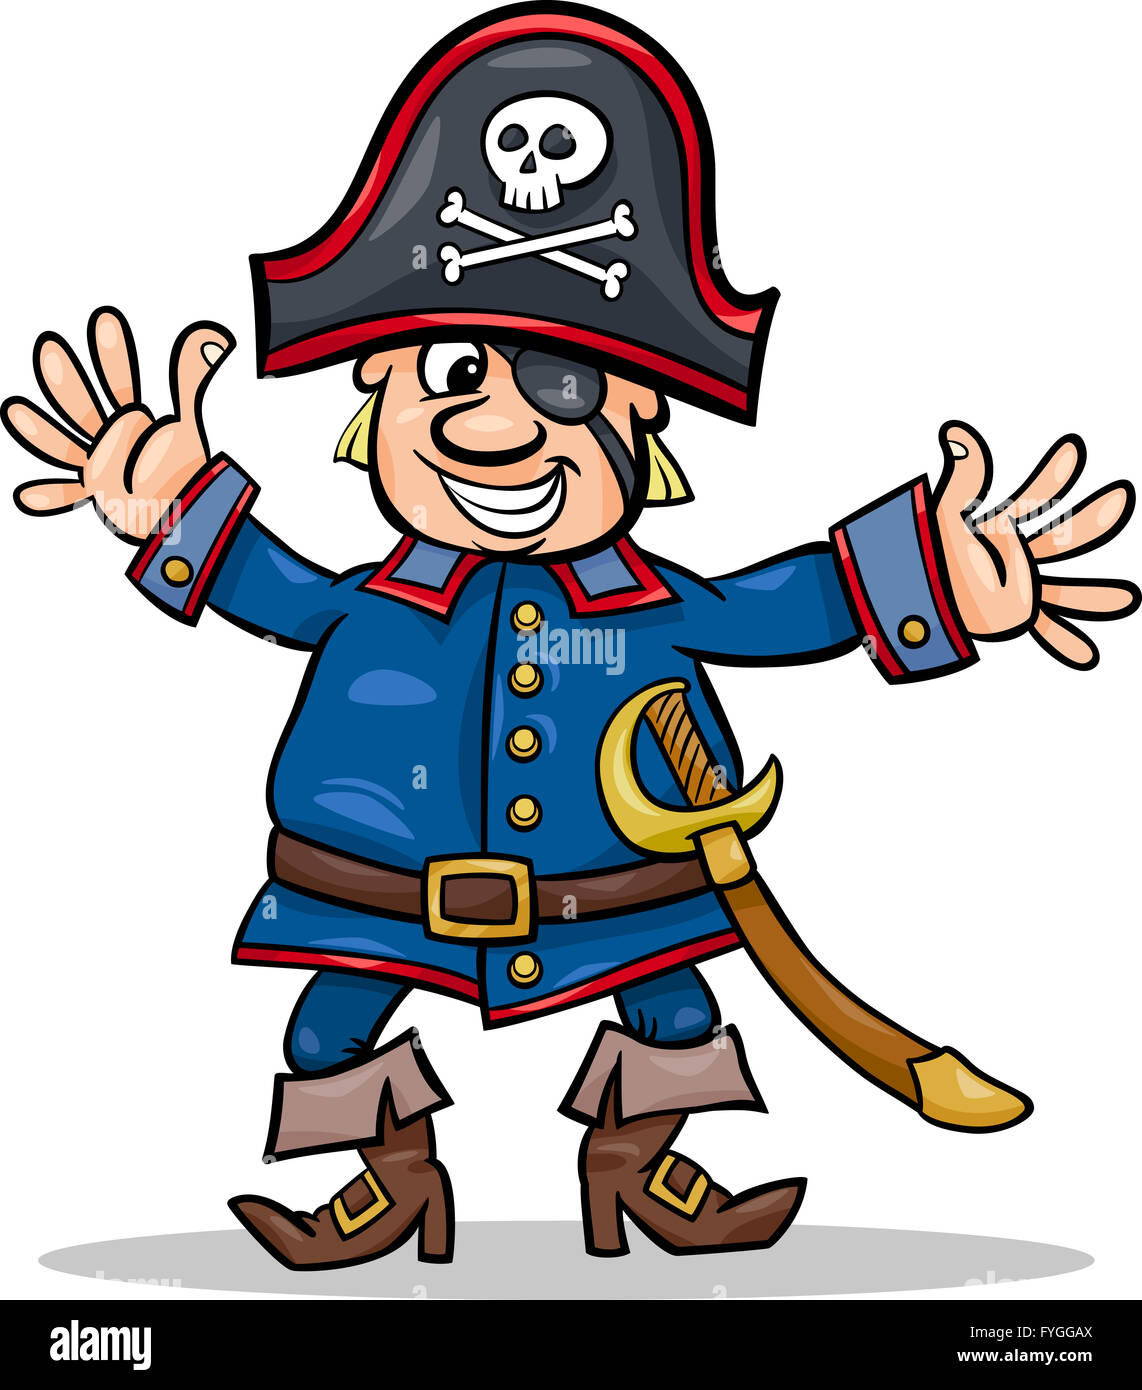 Capitán pirata sombreros, pañuelos y bufandas. Conjunto de ilustraciones  Fotografía de stock - Alamy